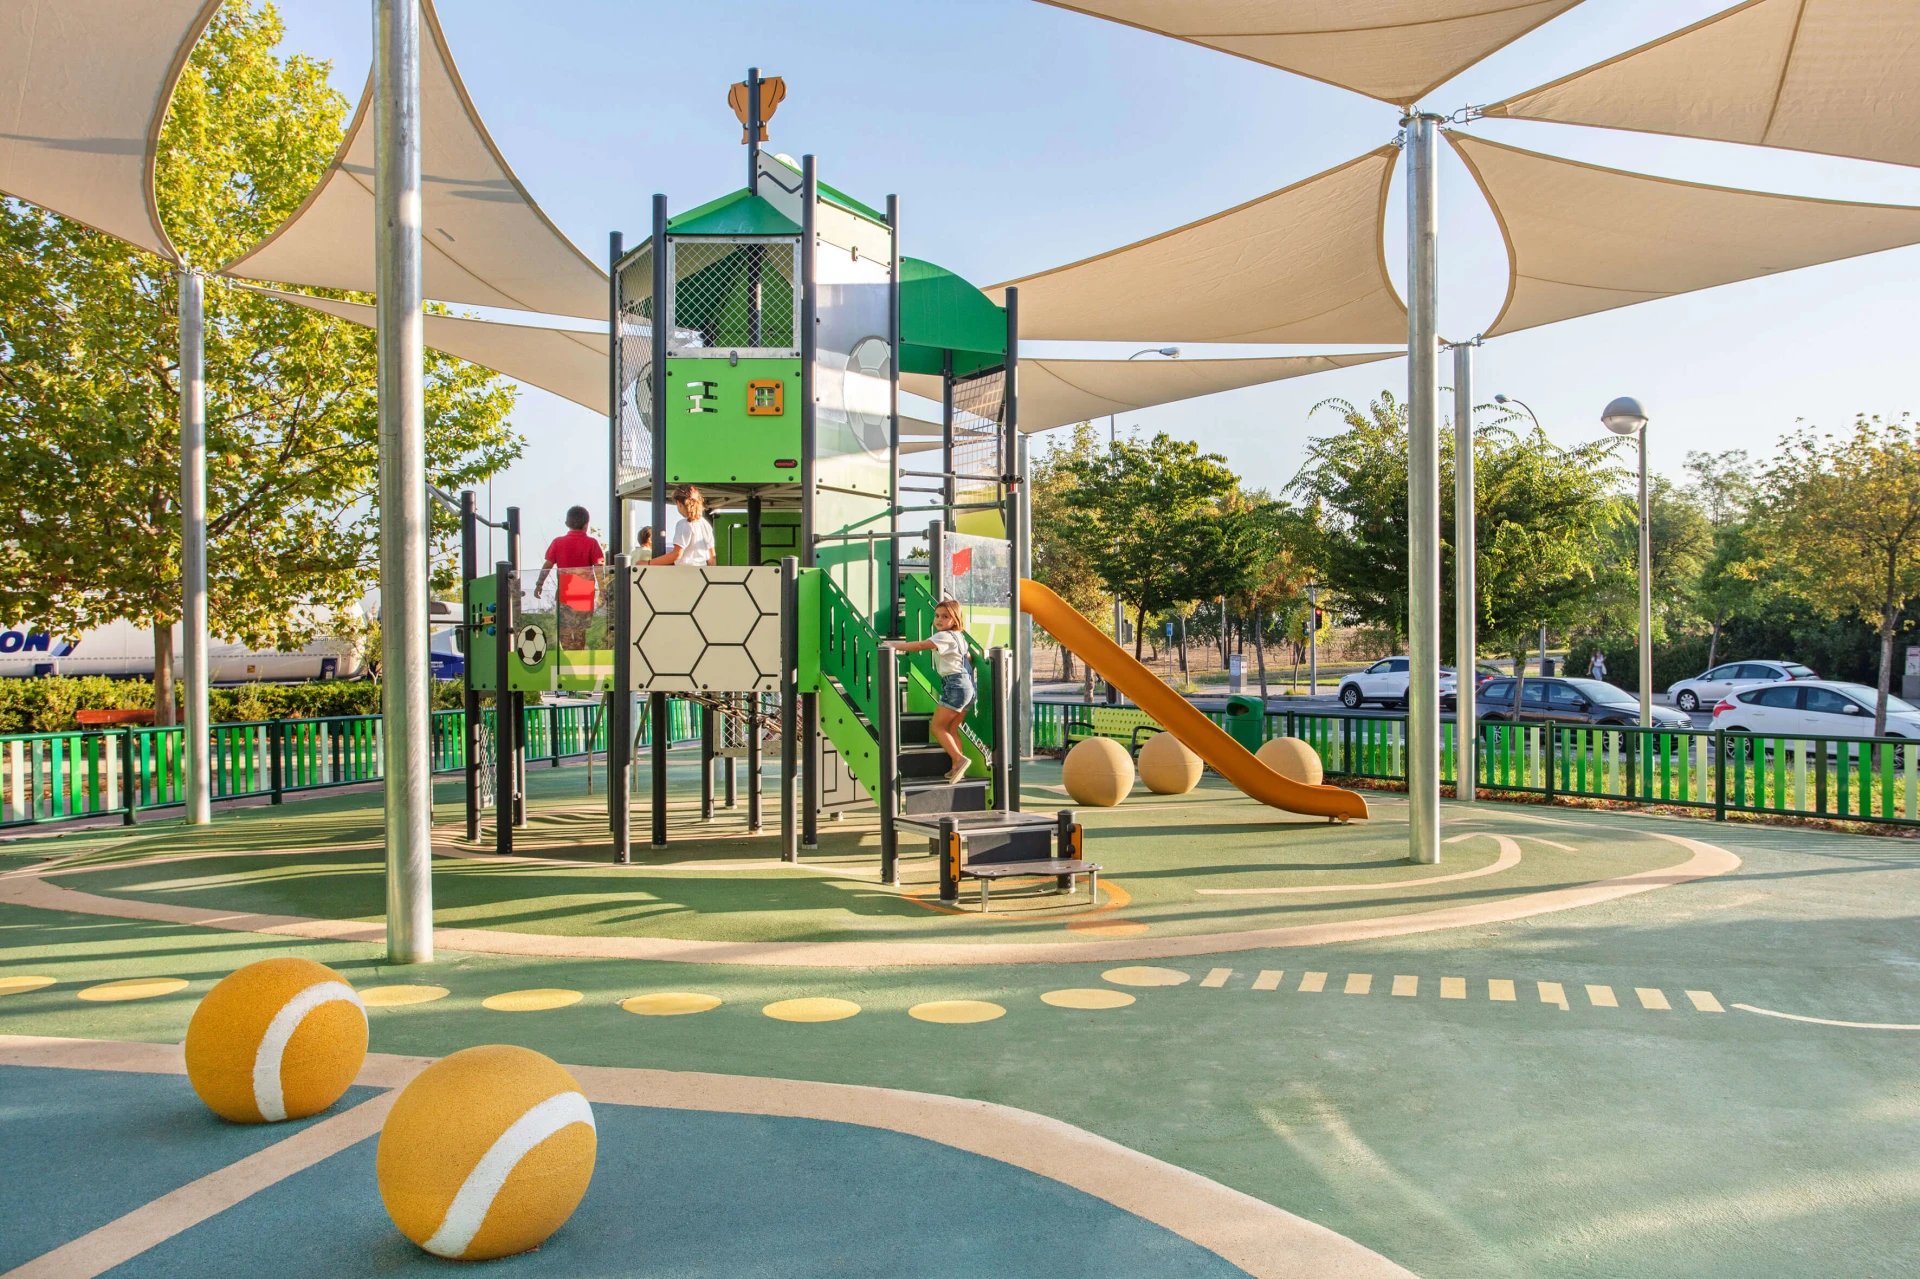 An image of a KOMPAN playground at a California park